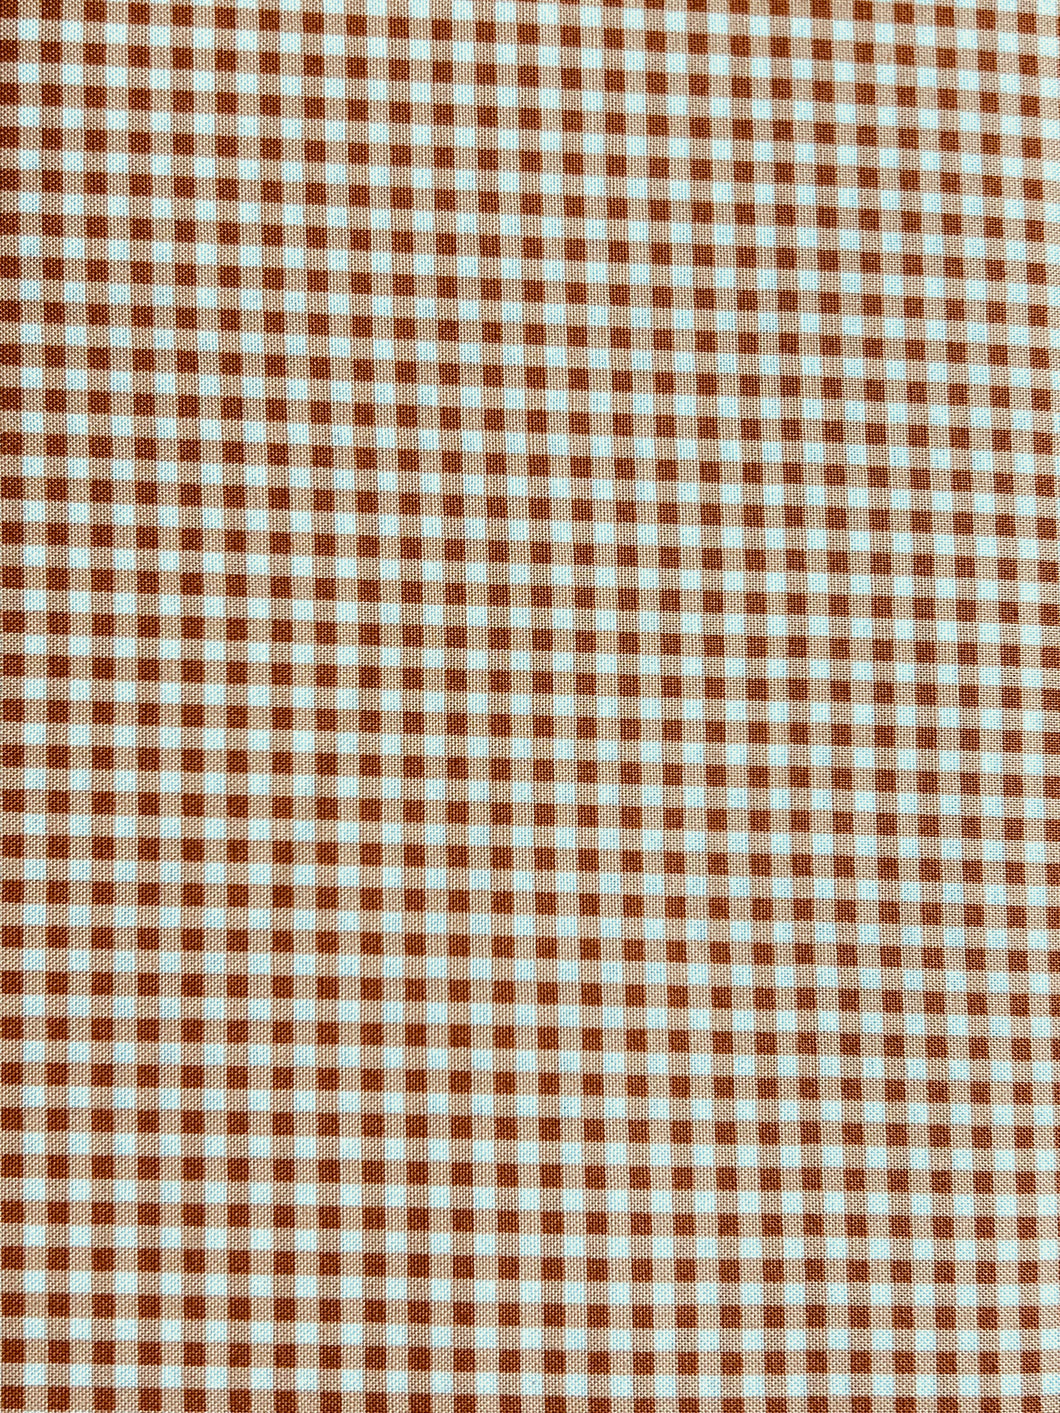 Orange and White Small Check Fabric